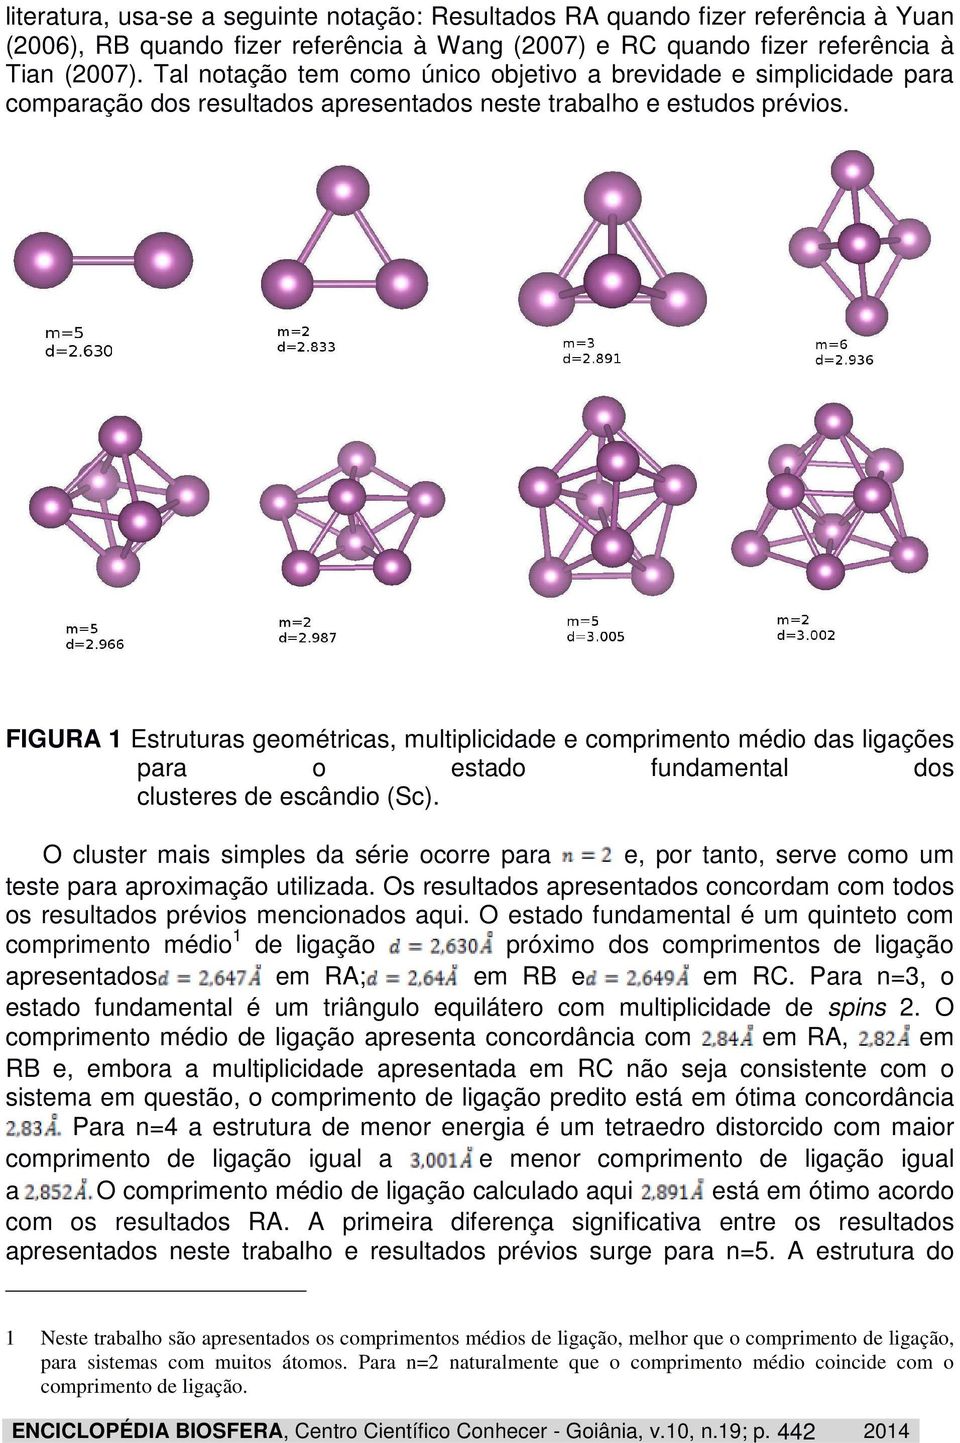 FIGURA 1 Estruturas geométricas, multiplicidade e comprimento médio das ligações para o estado fundamental dos clusteres de escândio (Sc).